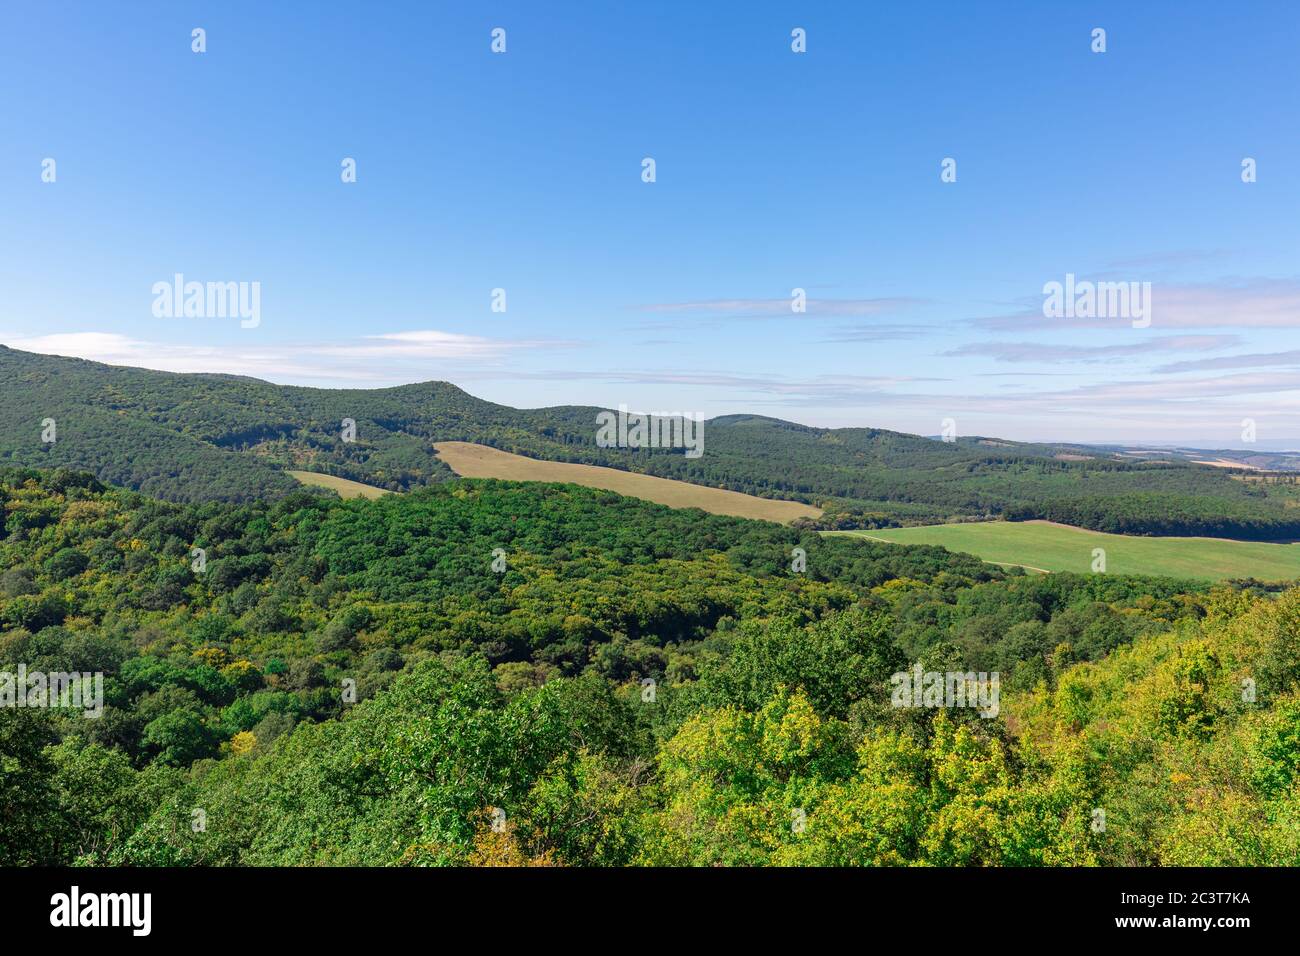 Hügellandschaft mit grünen Wald und Wiesenfeldern unter blauem Himmel, sonniger Sommertag. Natur Umwelt Szene, horizontale Landschaft Stockfoto